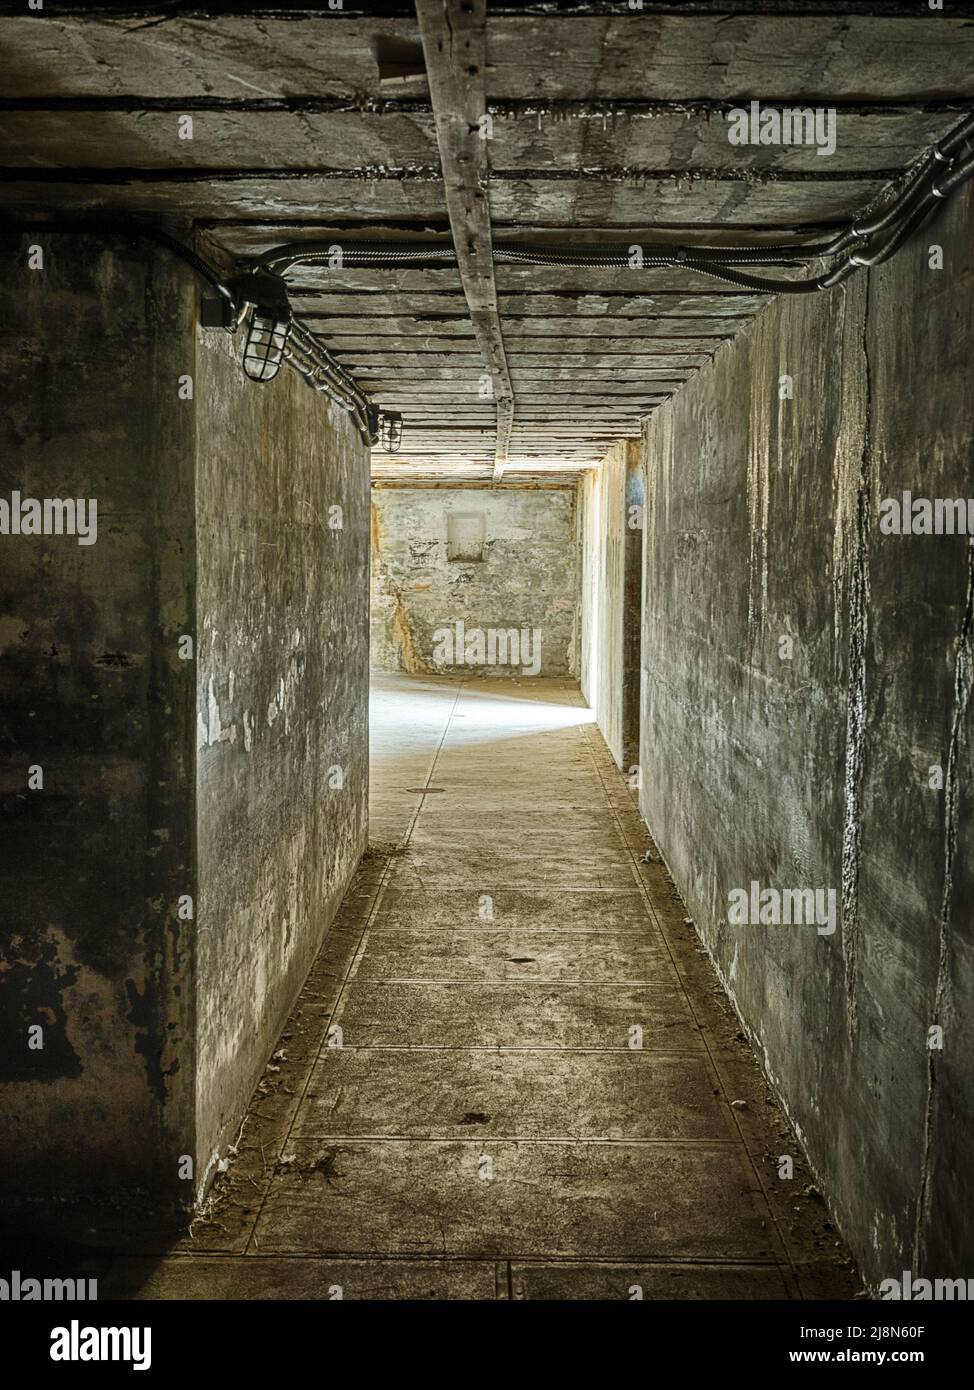 Un long couloir au rez-de-chaussée des ruines de fort Casey se termine en lumière de l'extérieur. Banque D'Images